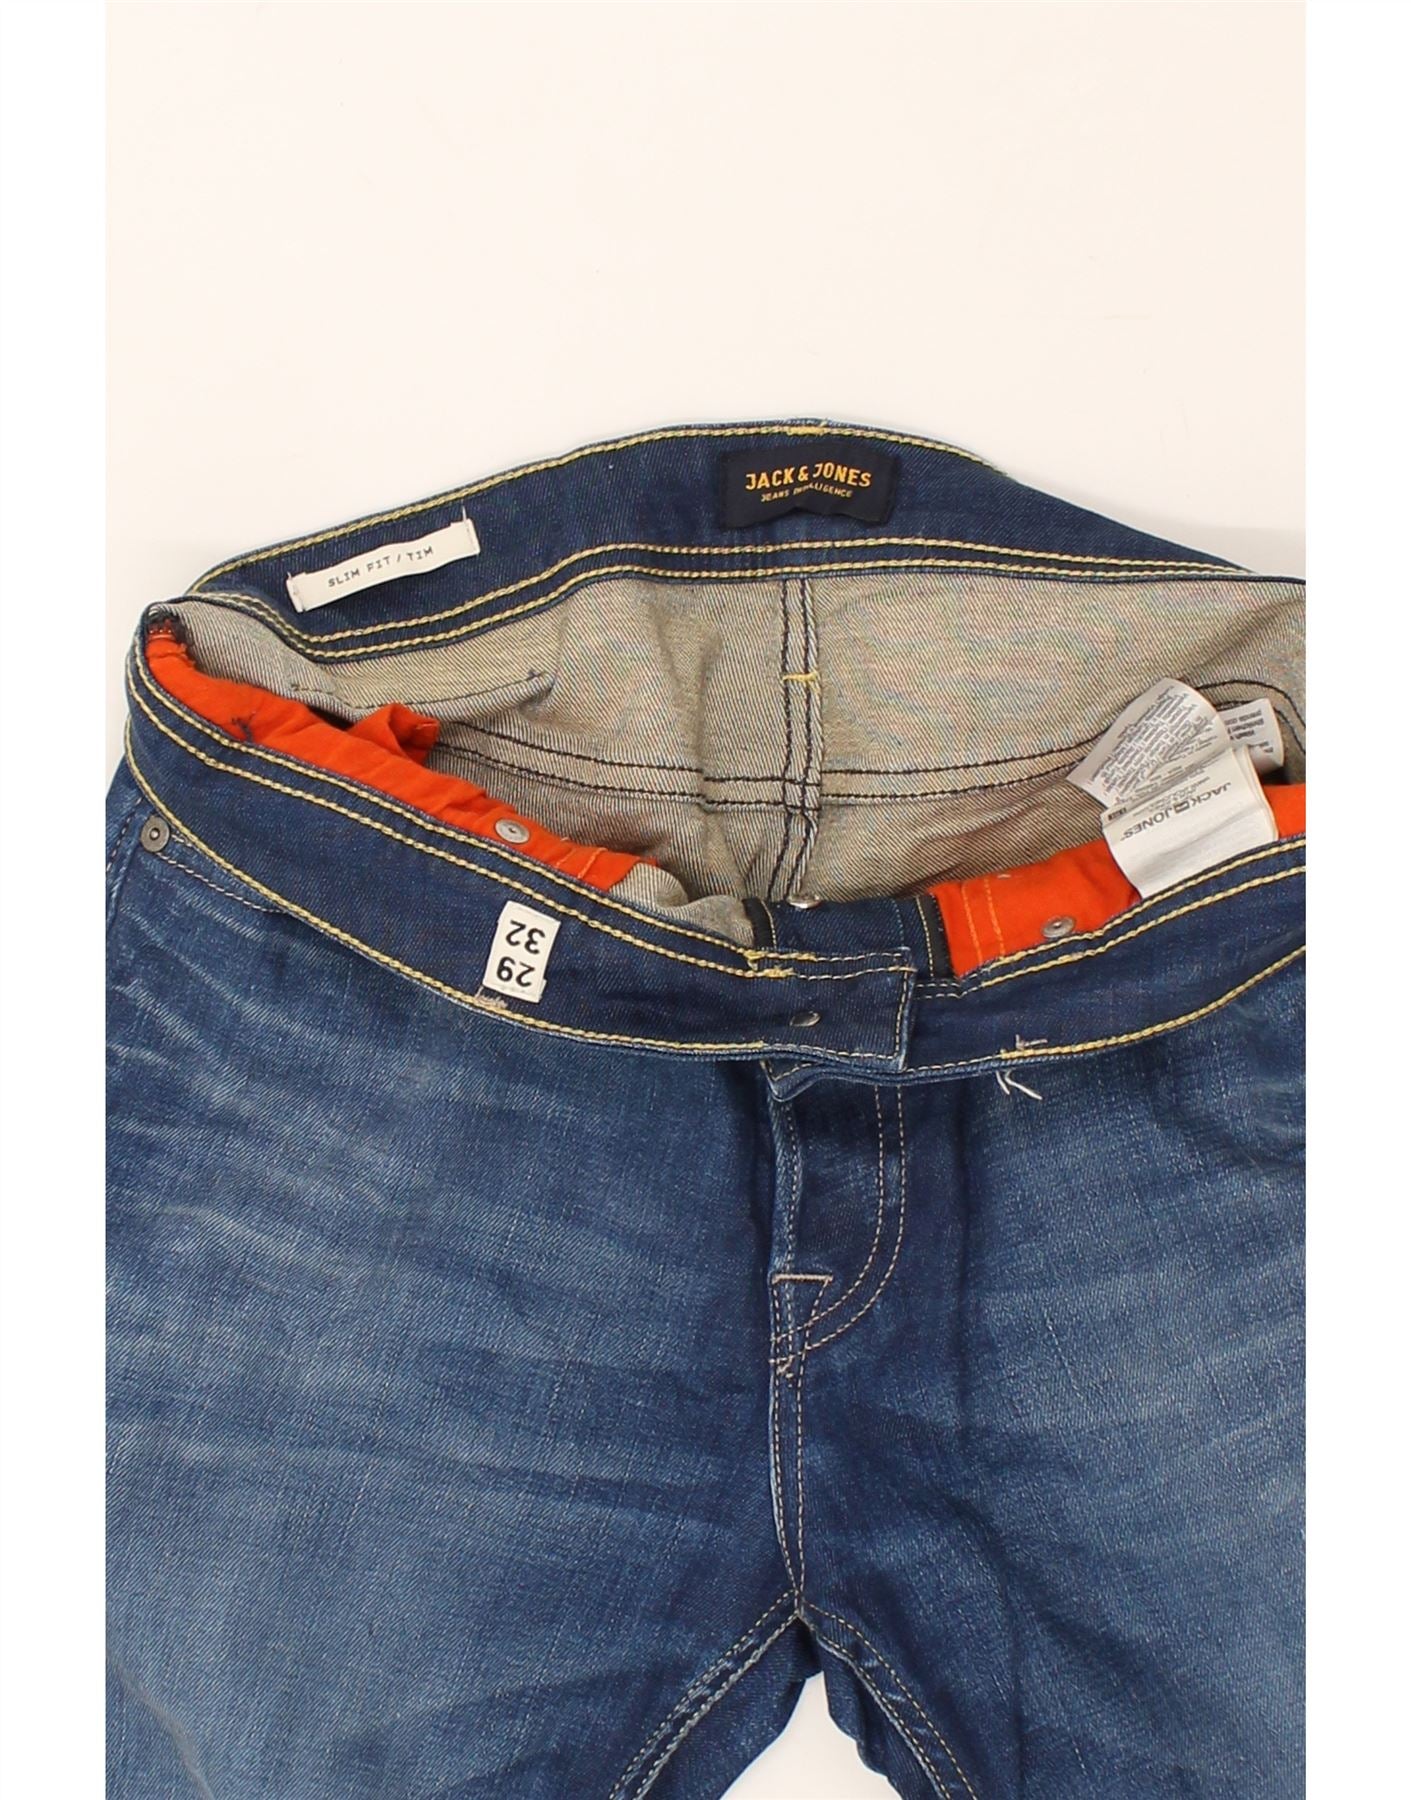 JACK & JONES Homme Tim Slim Jeans W29 L32 Bleu Coton | Jack &Jones vintage | Économie | Jack & Jones d'occasion | Vêtements d'occasion | Messine Hembry